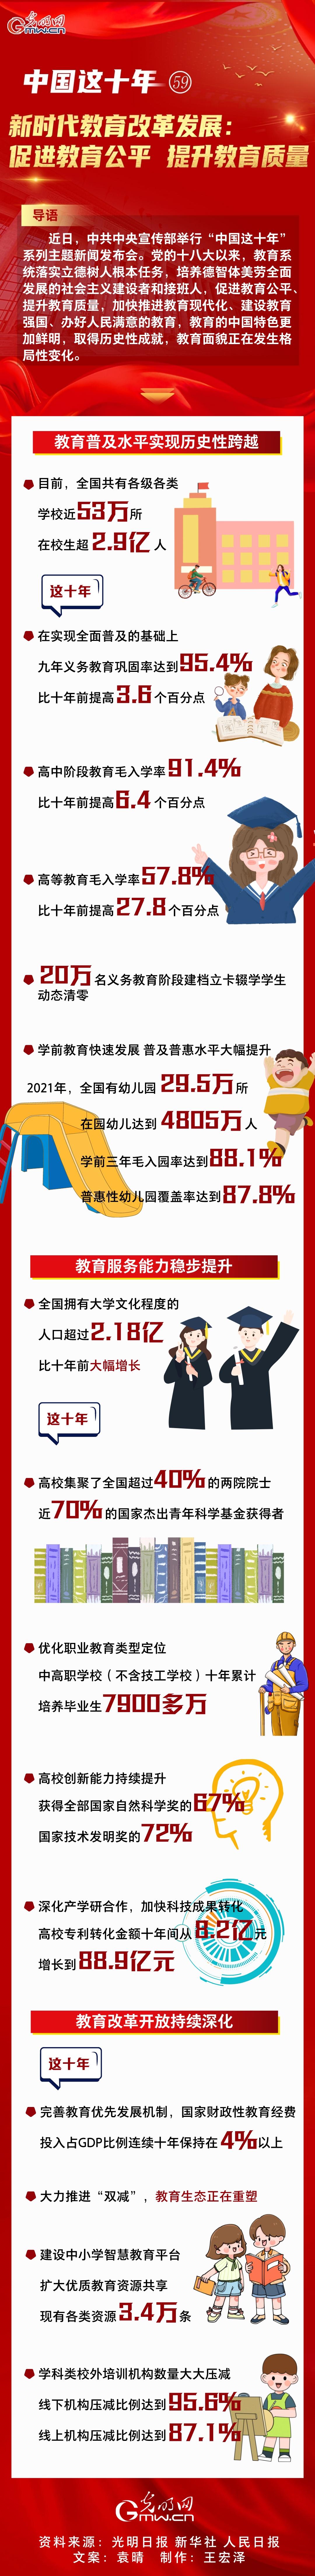 【中国这十年59】一图速览 新时代教育改革发展:促进教育公平 提升